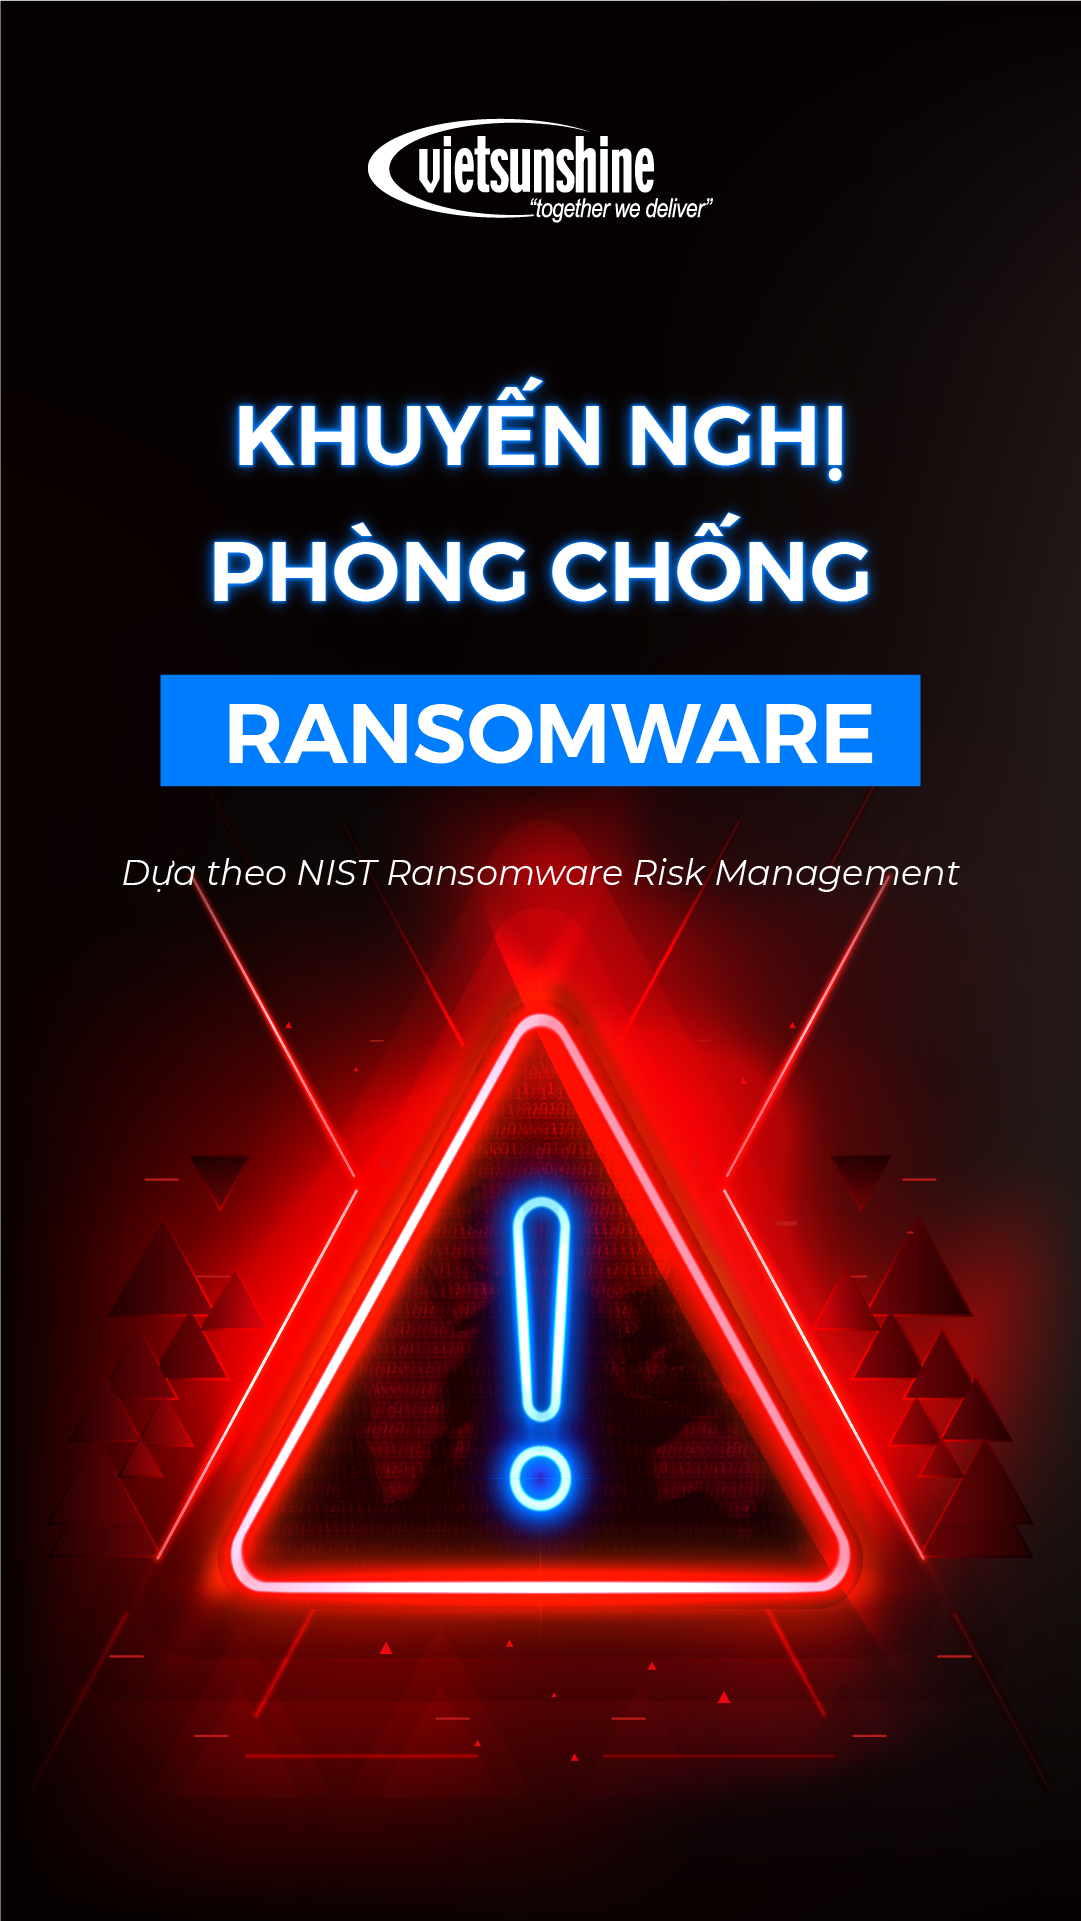 Khuyến nghị phòng chống ransomware: Framework, Kiến Trúc, Giải Pháp và Dịch Vụ